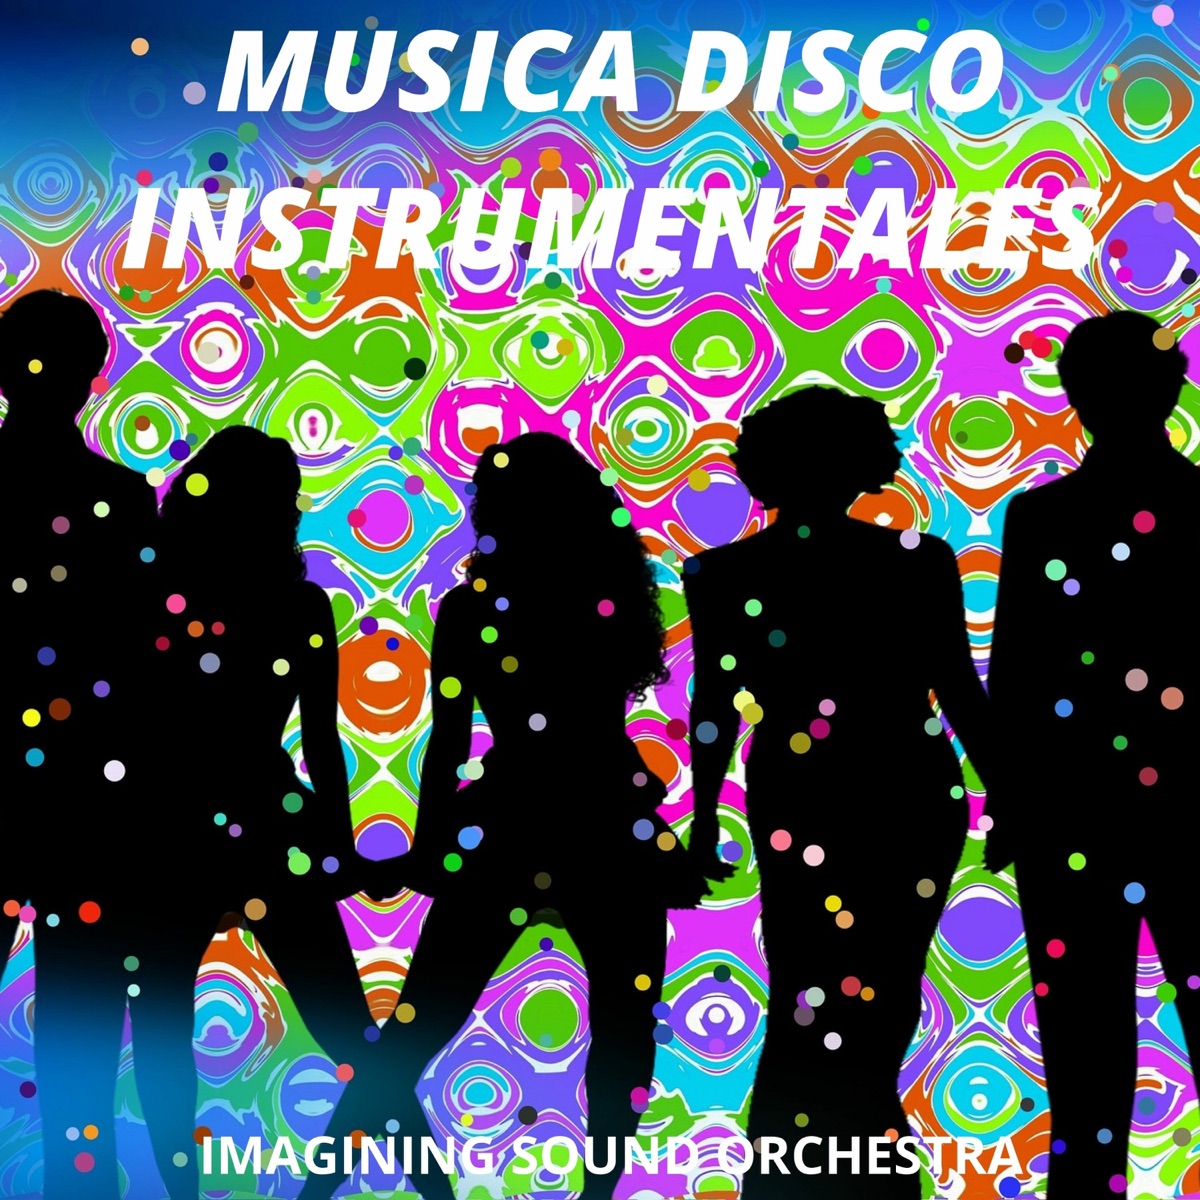 Los Grupos De Rock & Sus Instrumentales - Album by The Imagining